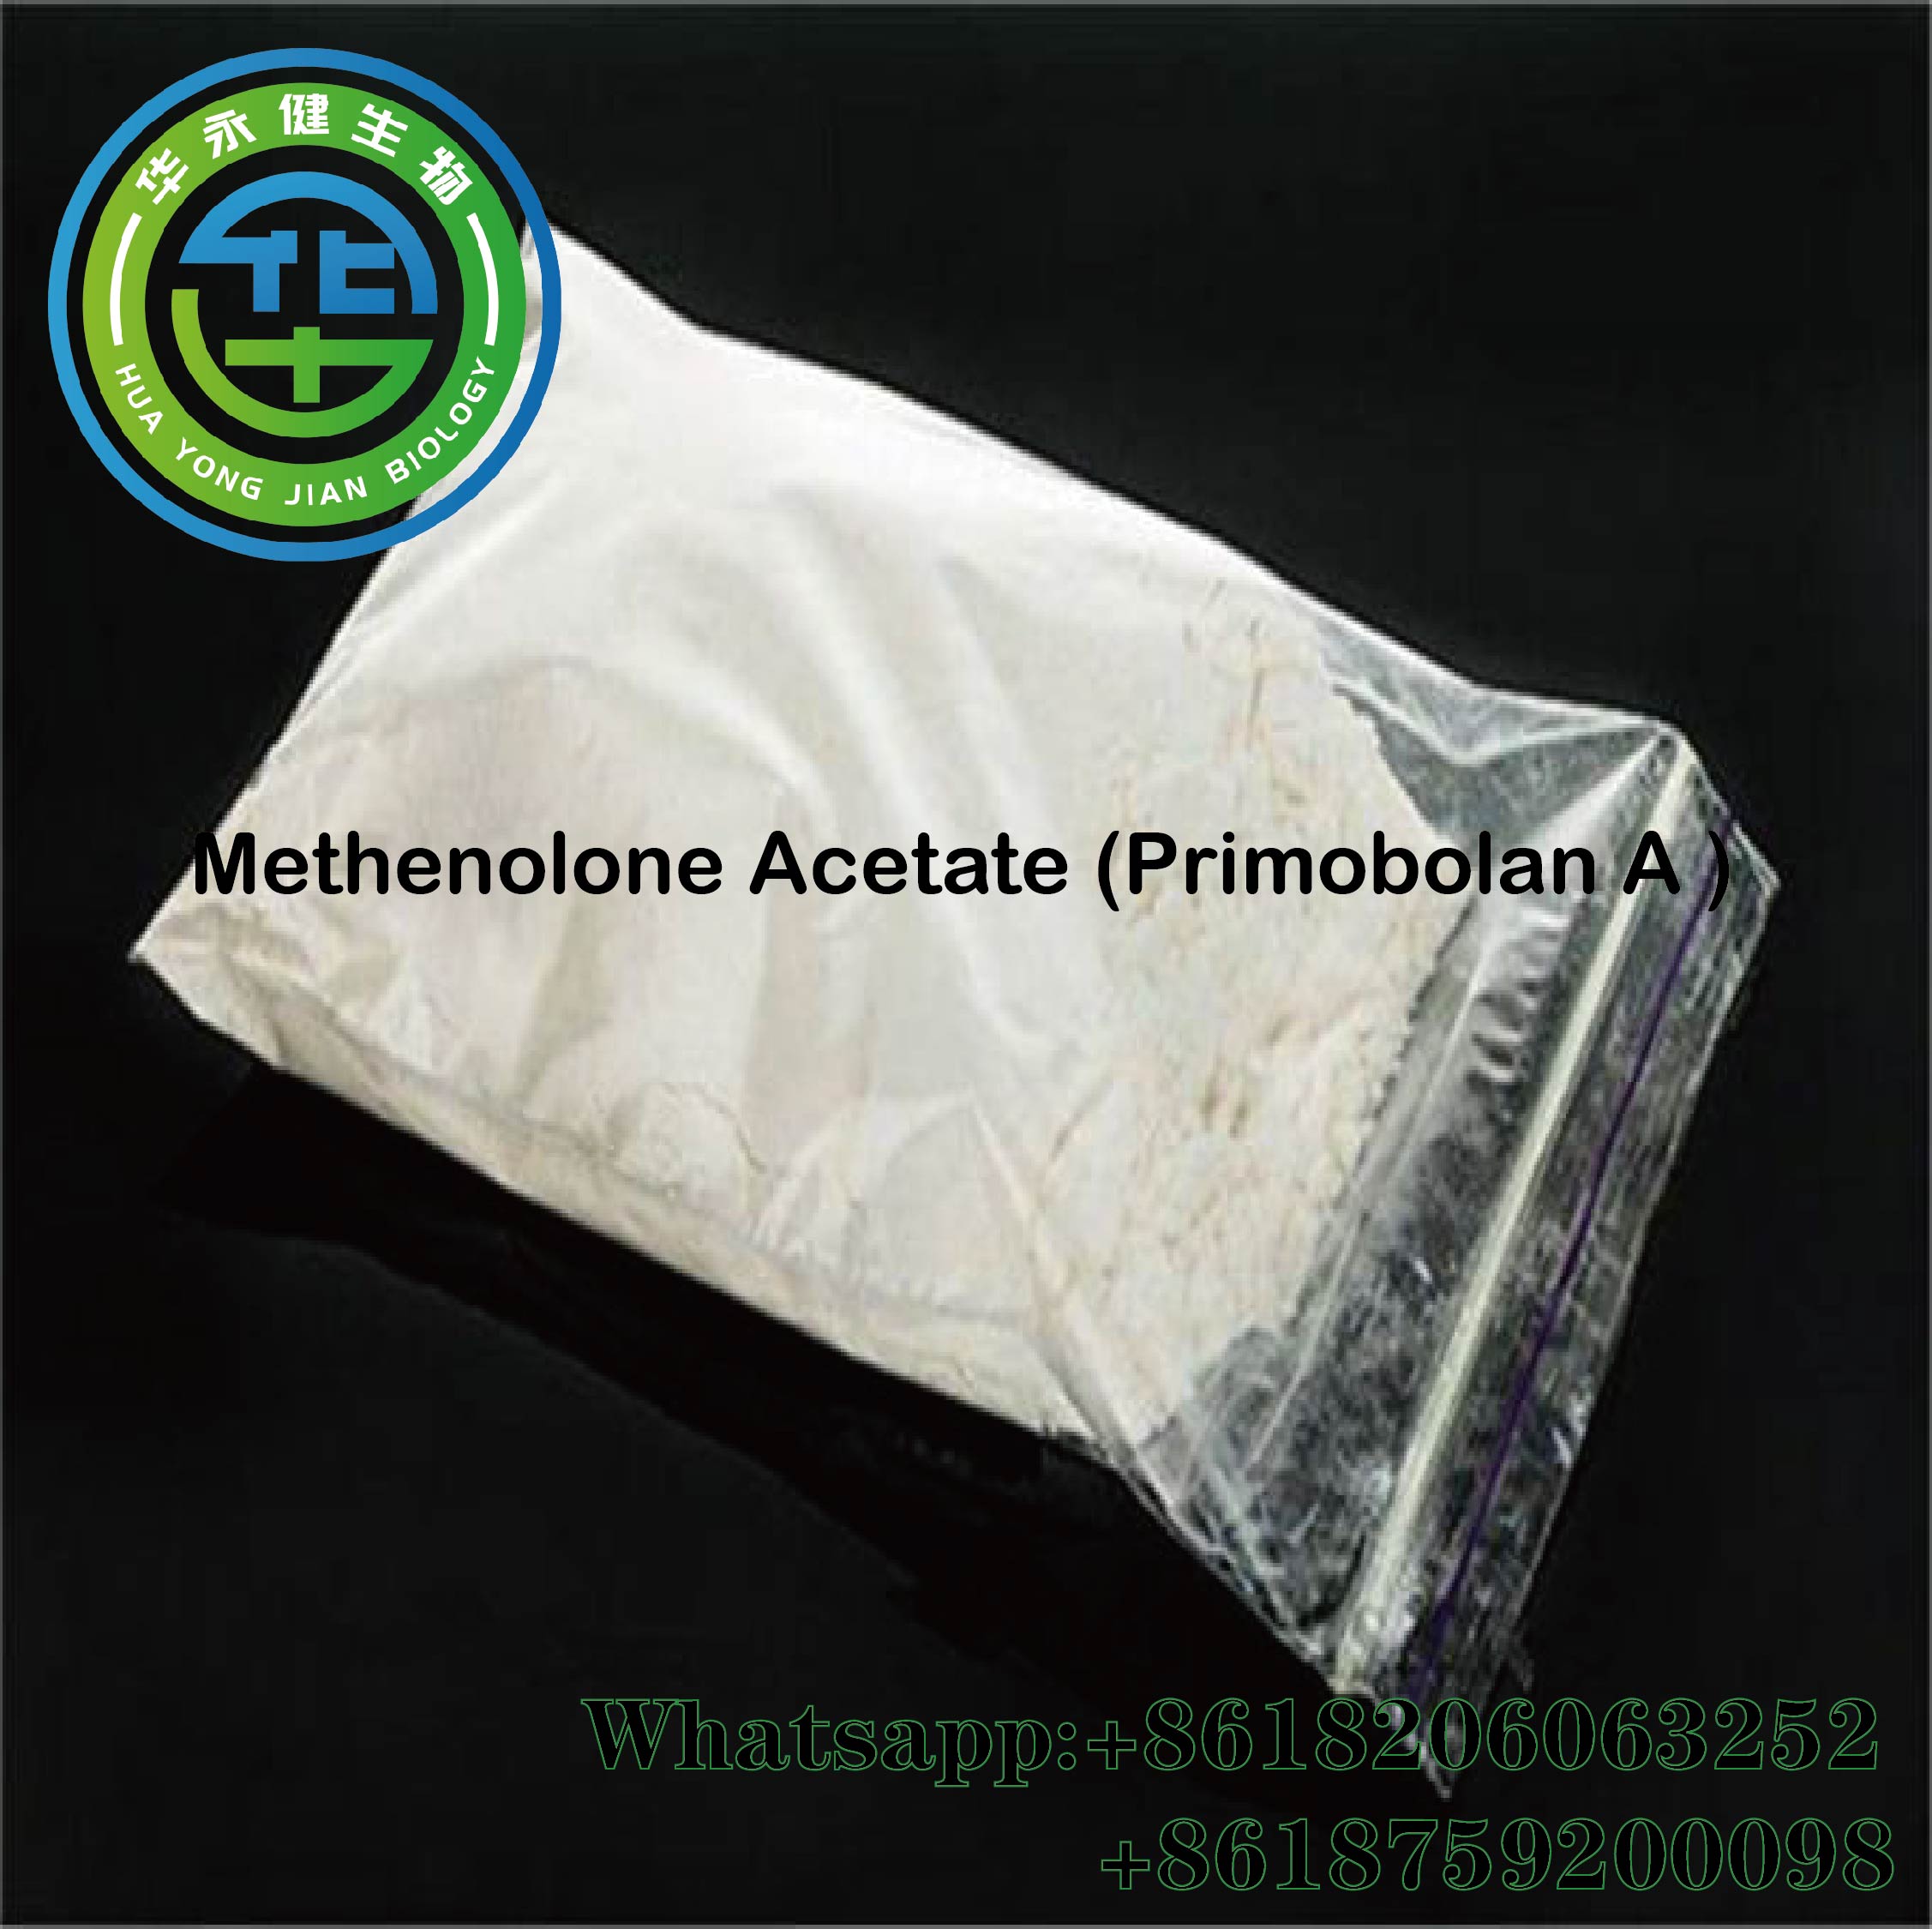 Methenolone Acetate Powder Anabolic Oral Primobolan Acetate Depot CAS 434-05-9 